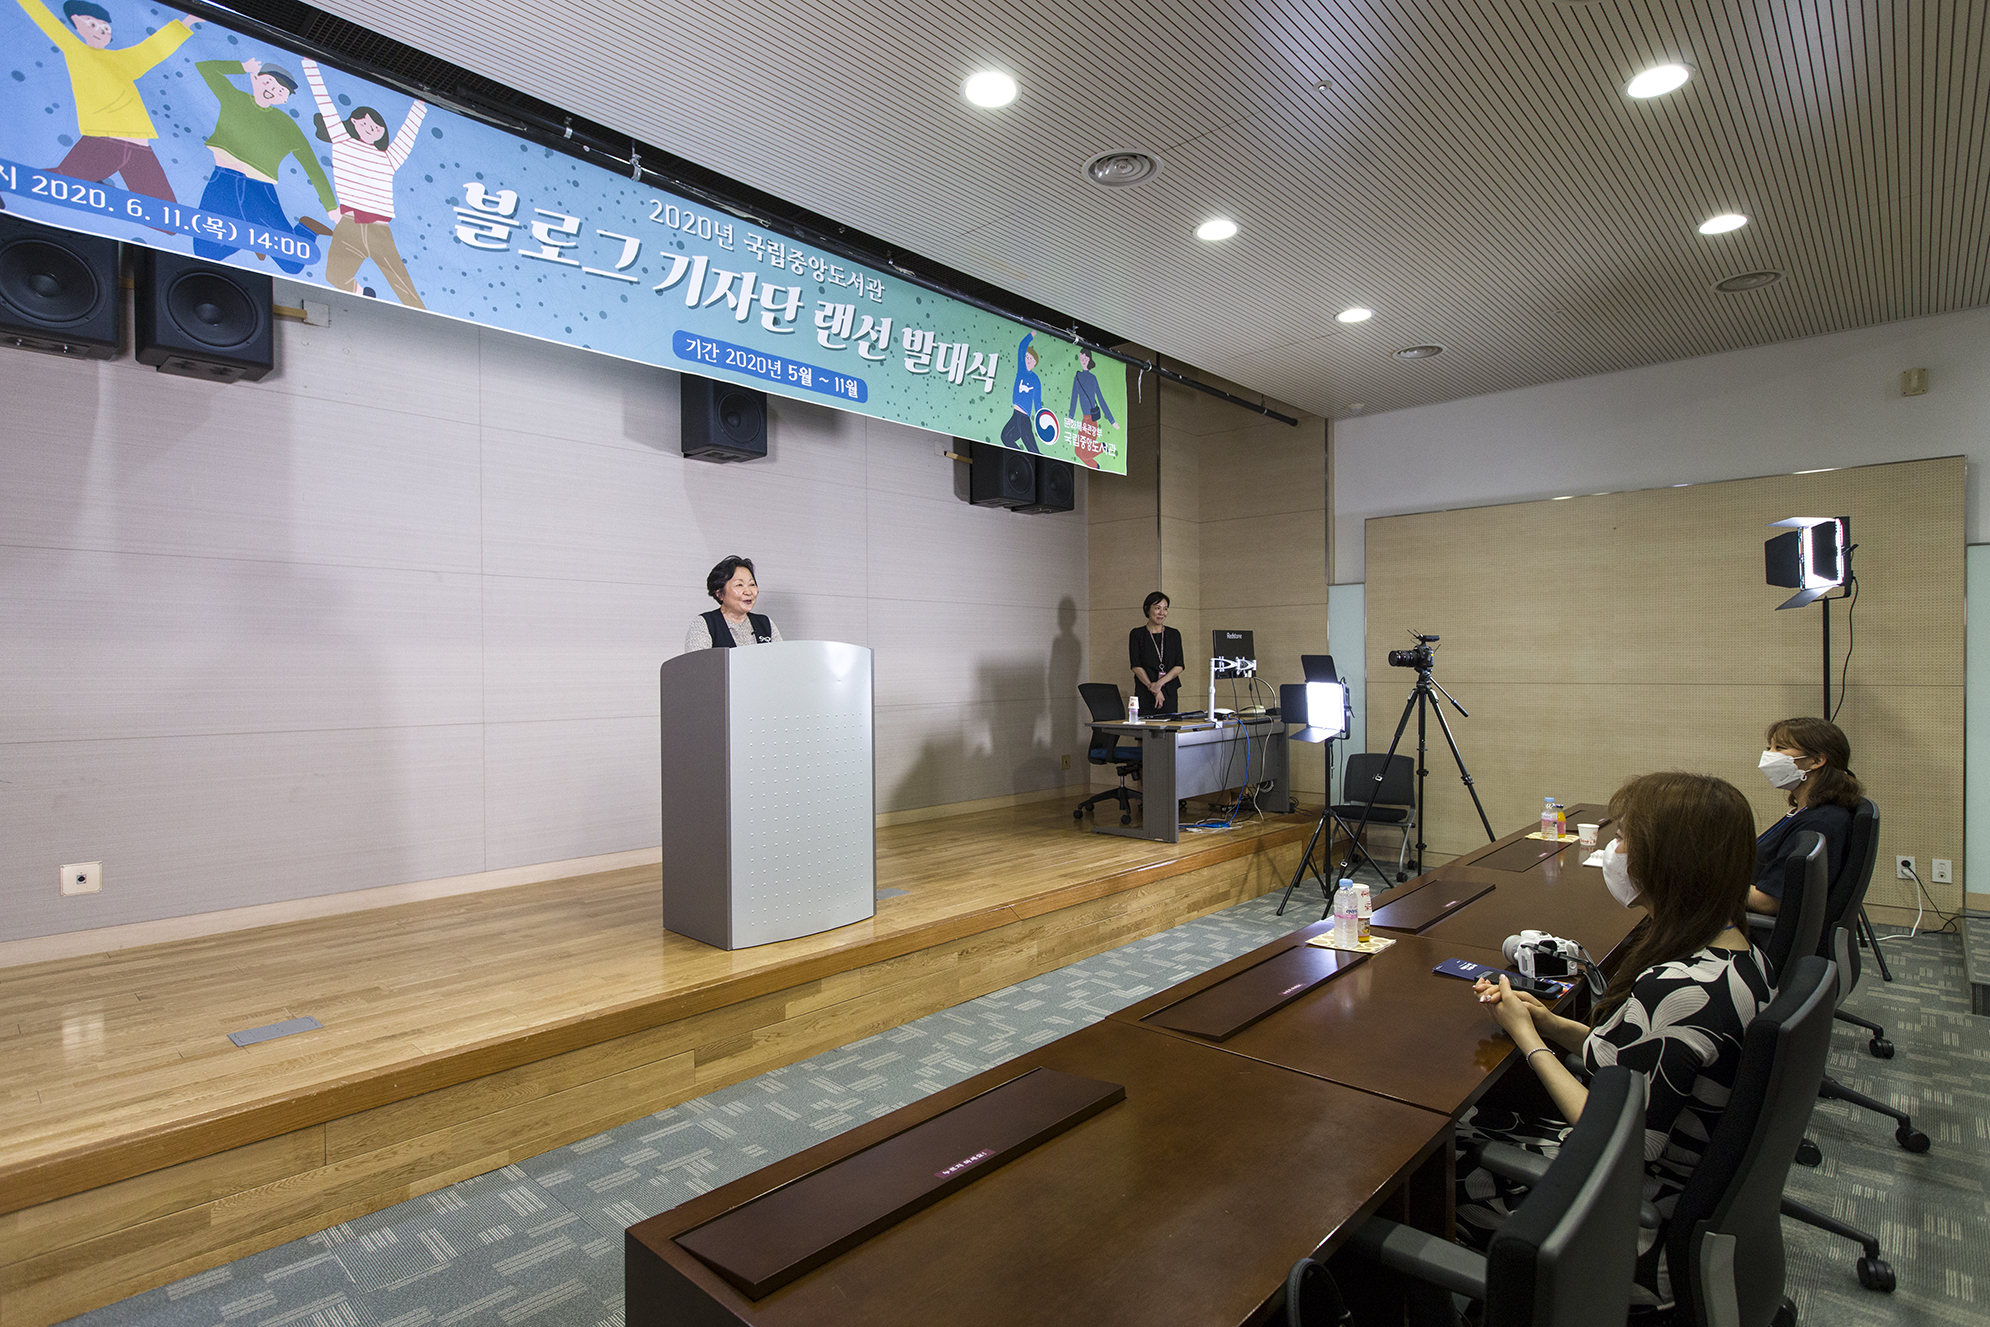 국립중앙도서관은 11일(목) 디지털도서관 지하2층 세미나실에서 <2020년 국립중앙도서관 블로그 기자단 발대식>이 열렸다.